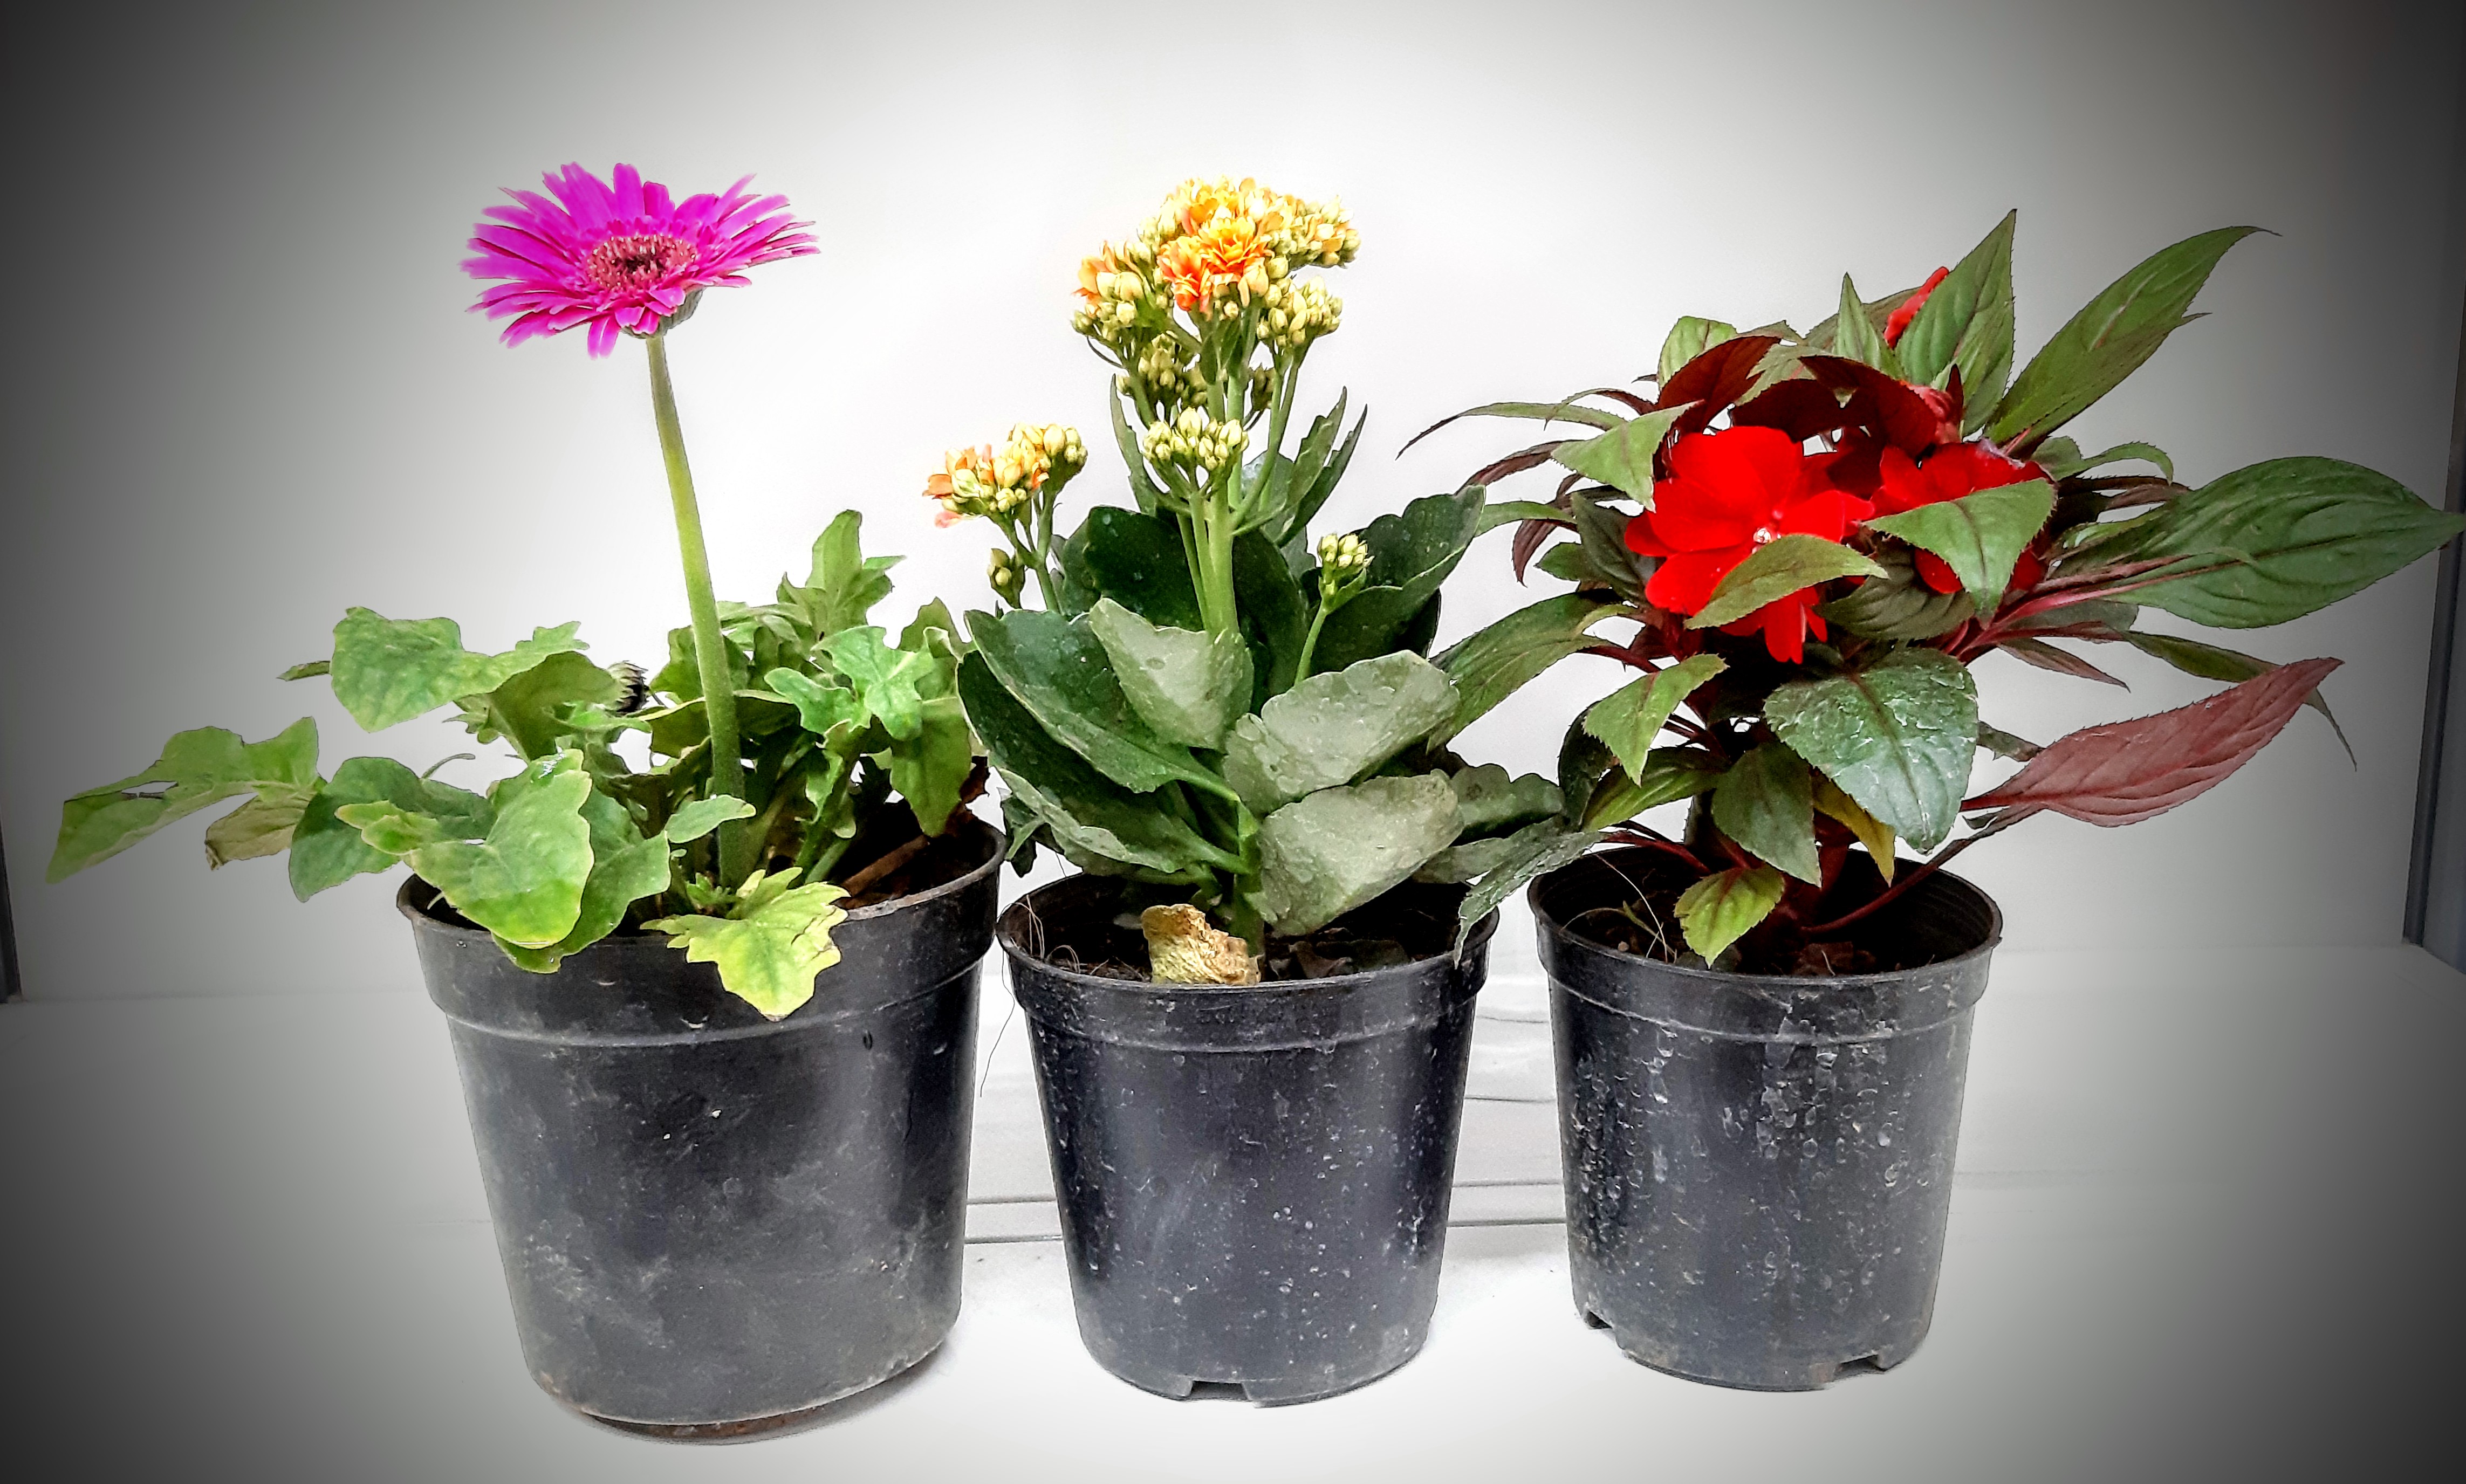 buy flowering plants online - flowering plants gift